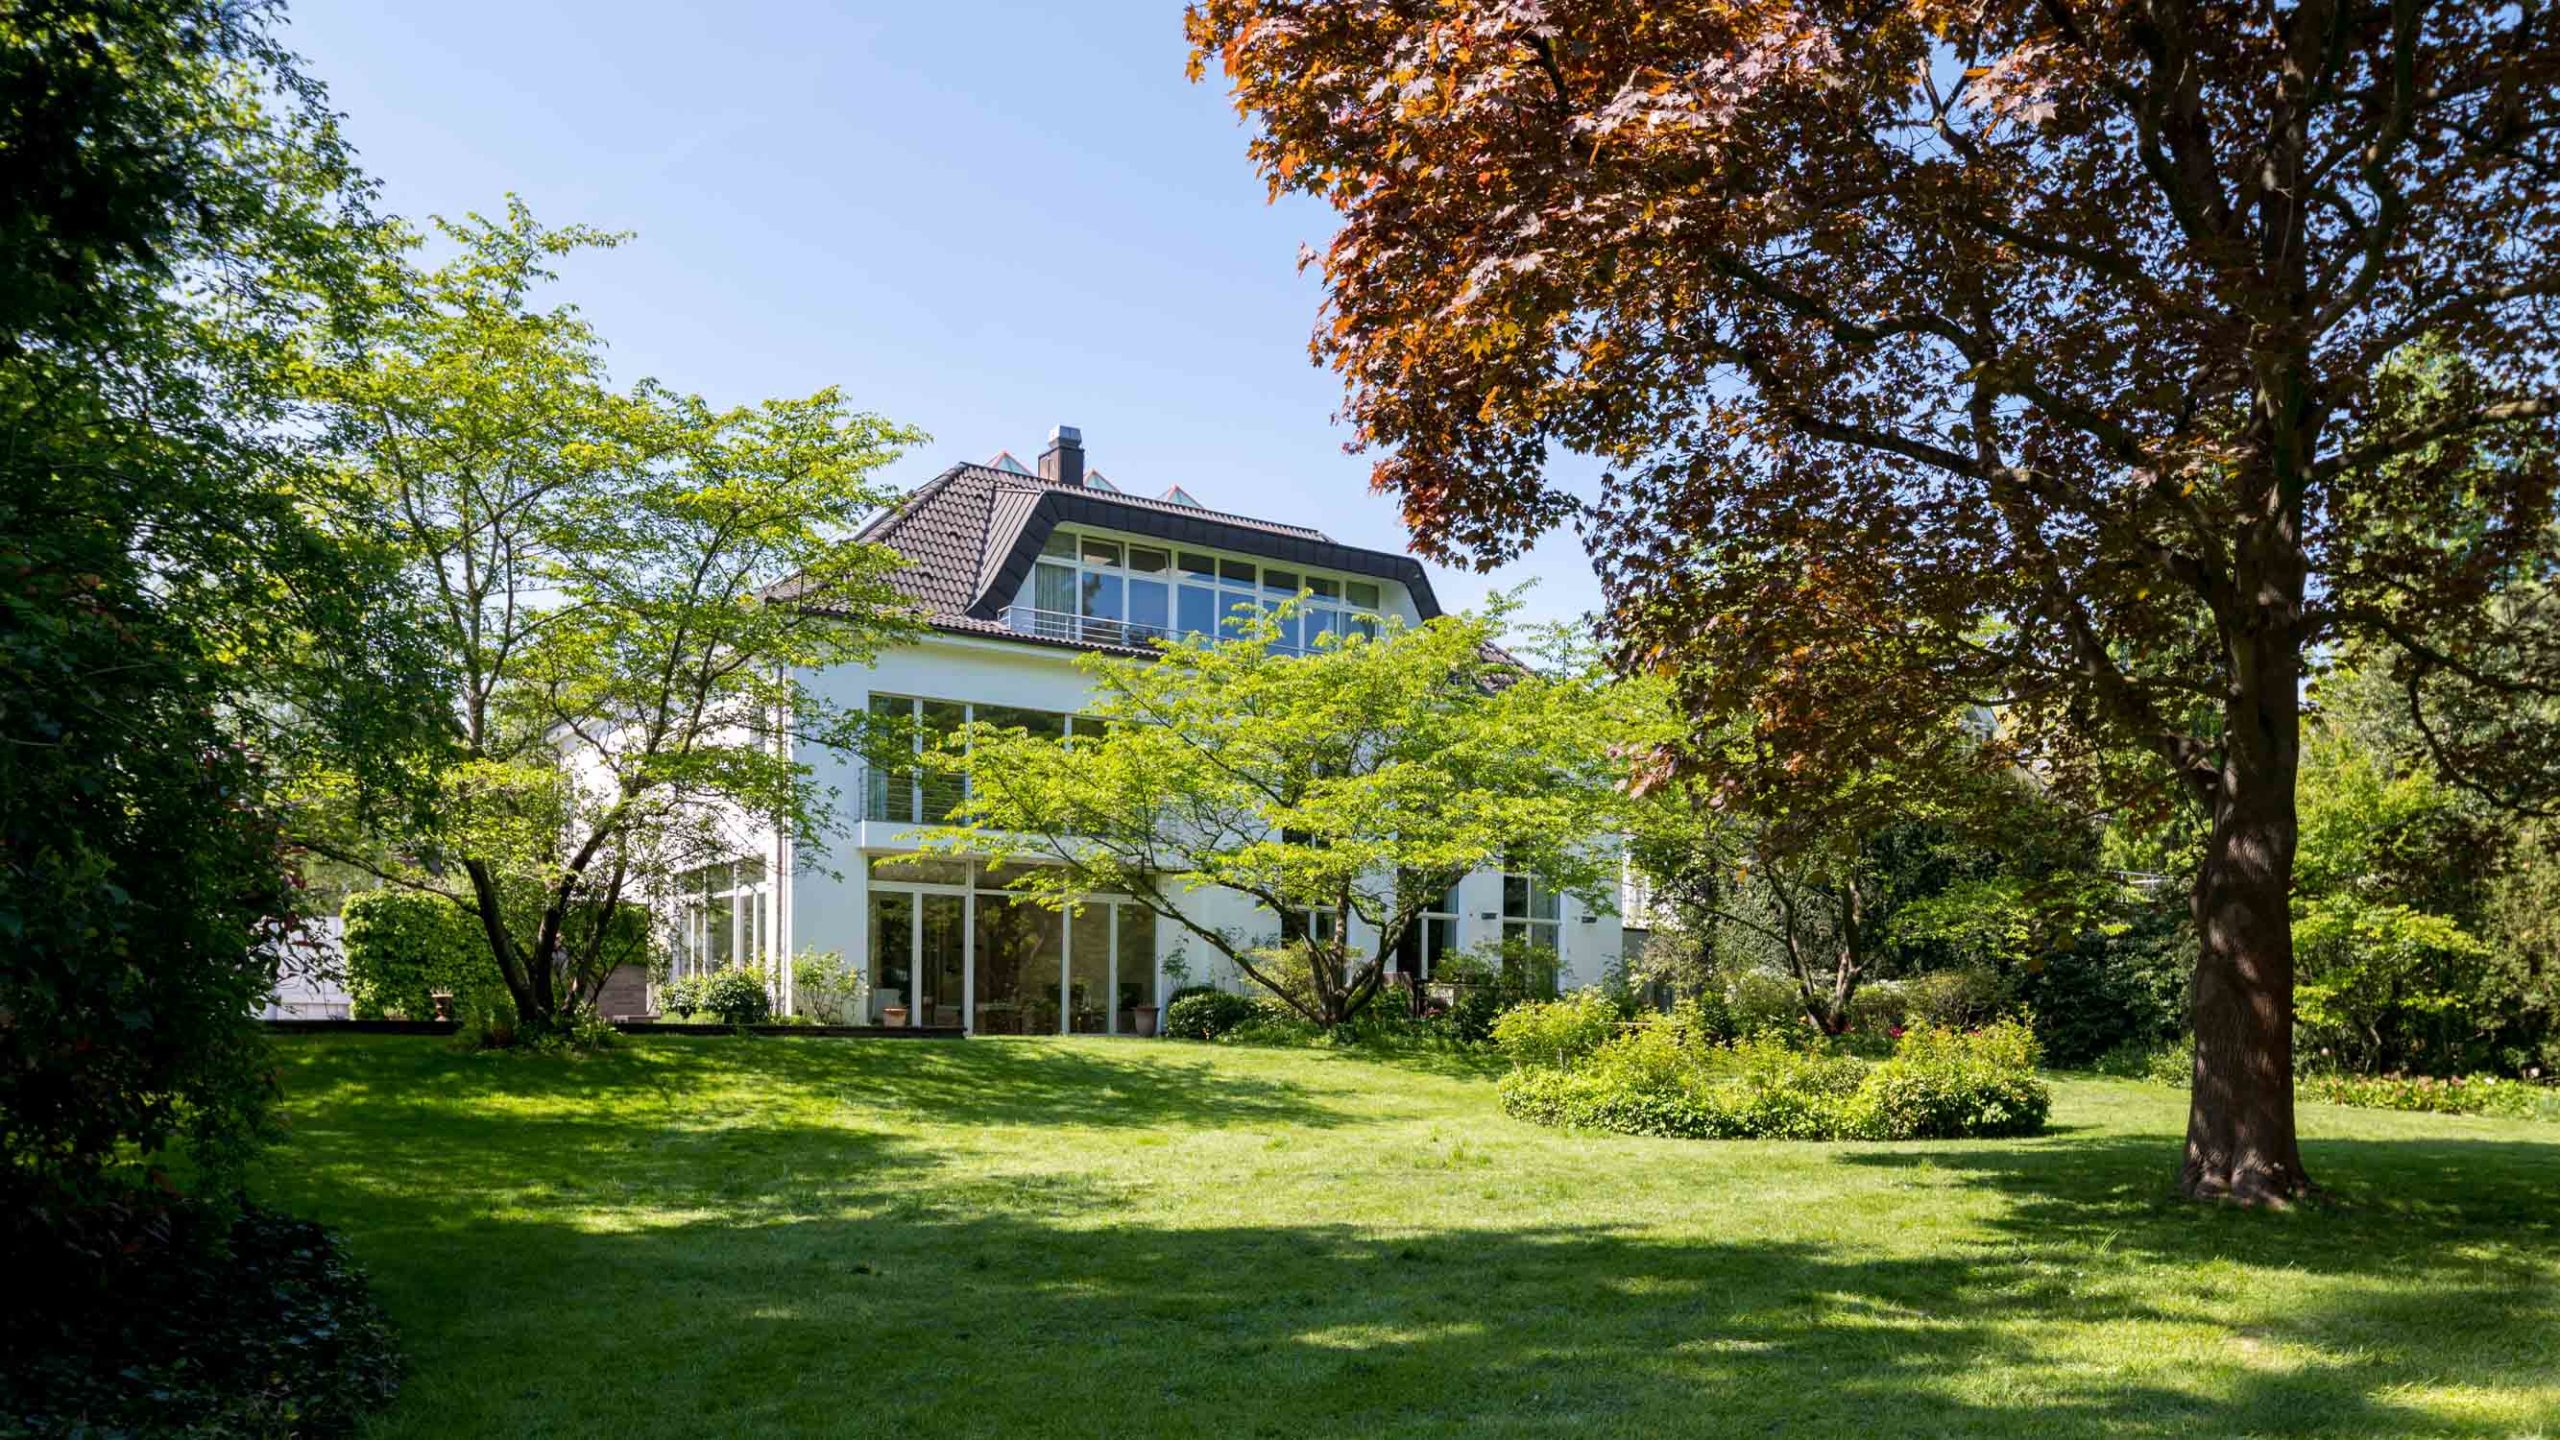 Immobilie Architekturfotografie eines Hauses in einem grünen Parkgelände. Viele Bäume und Wiesen. Foto von Immobilienfotograf Düsseldorf